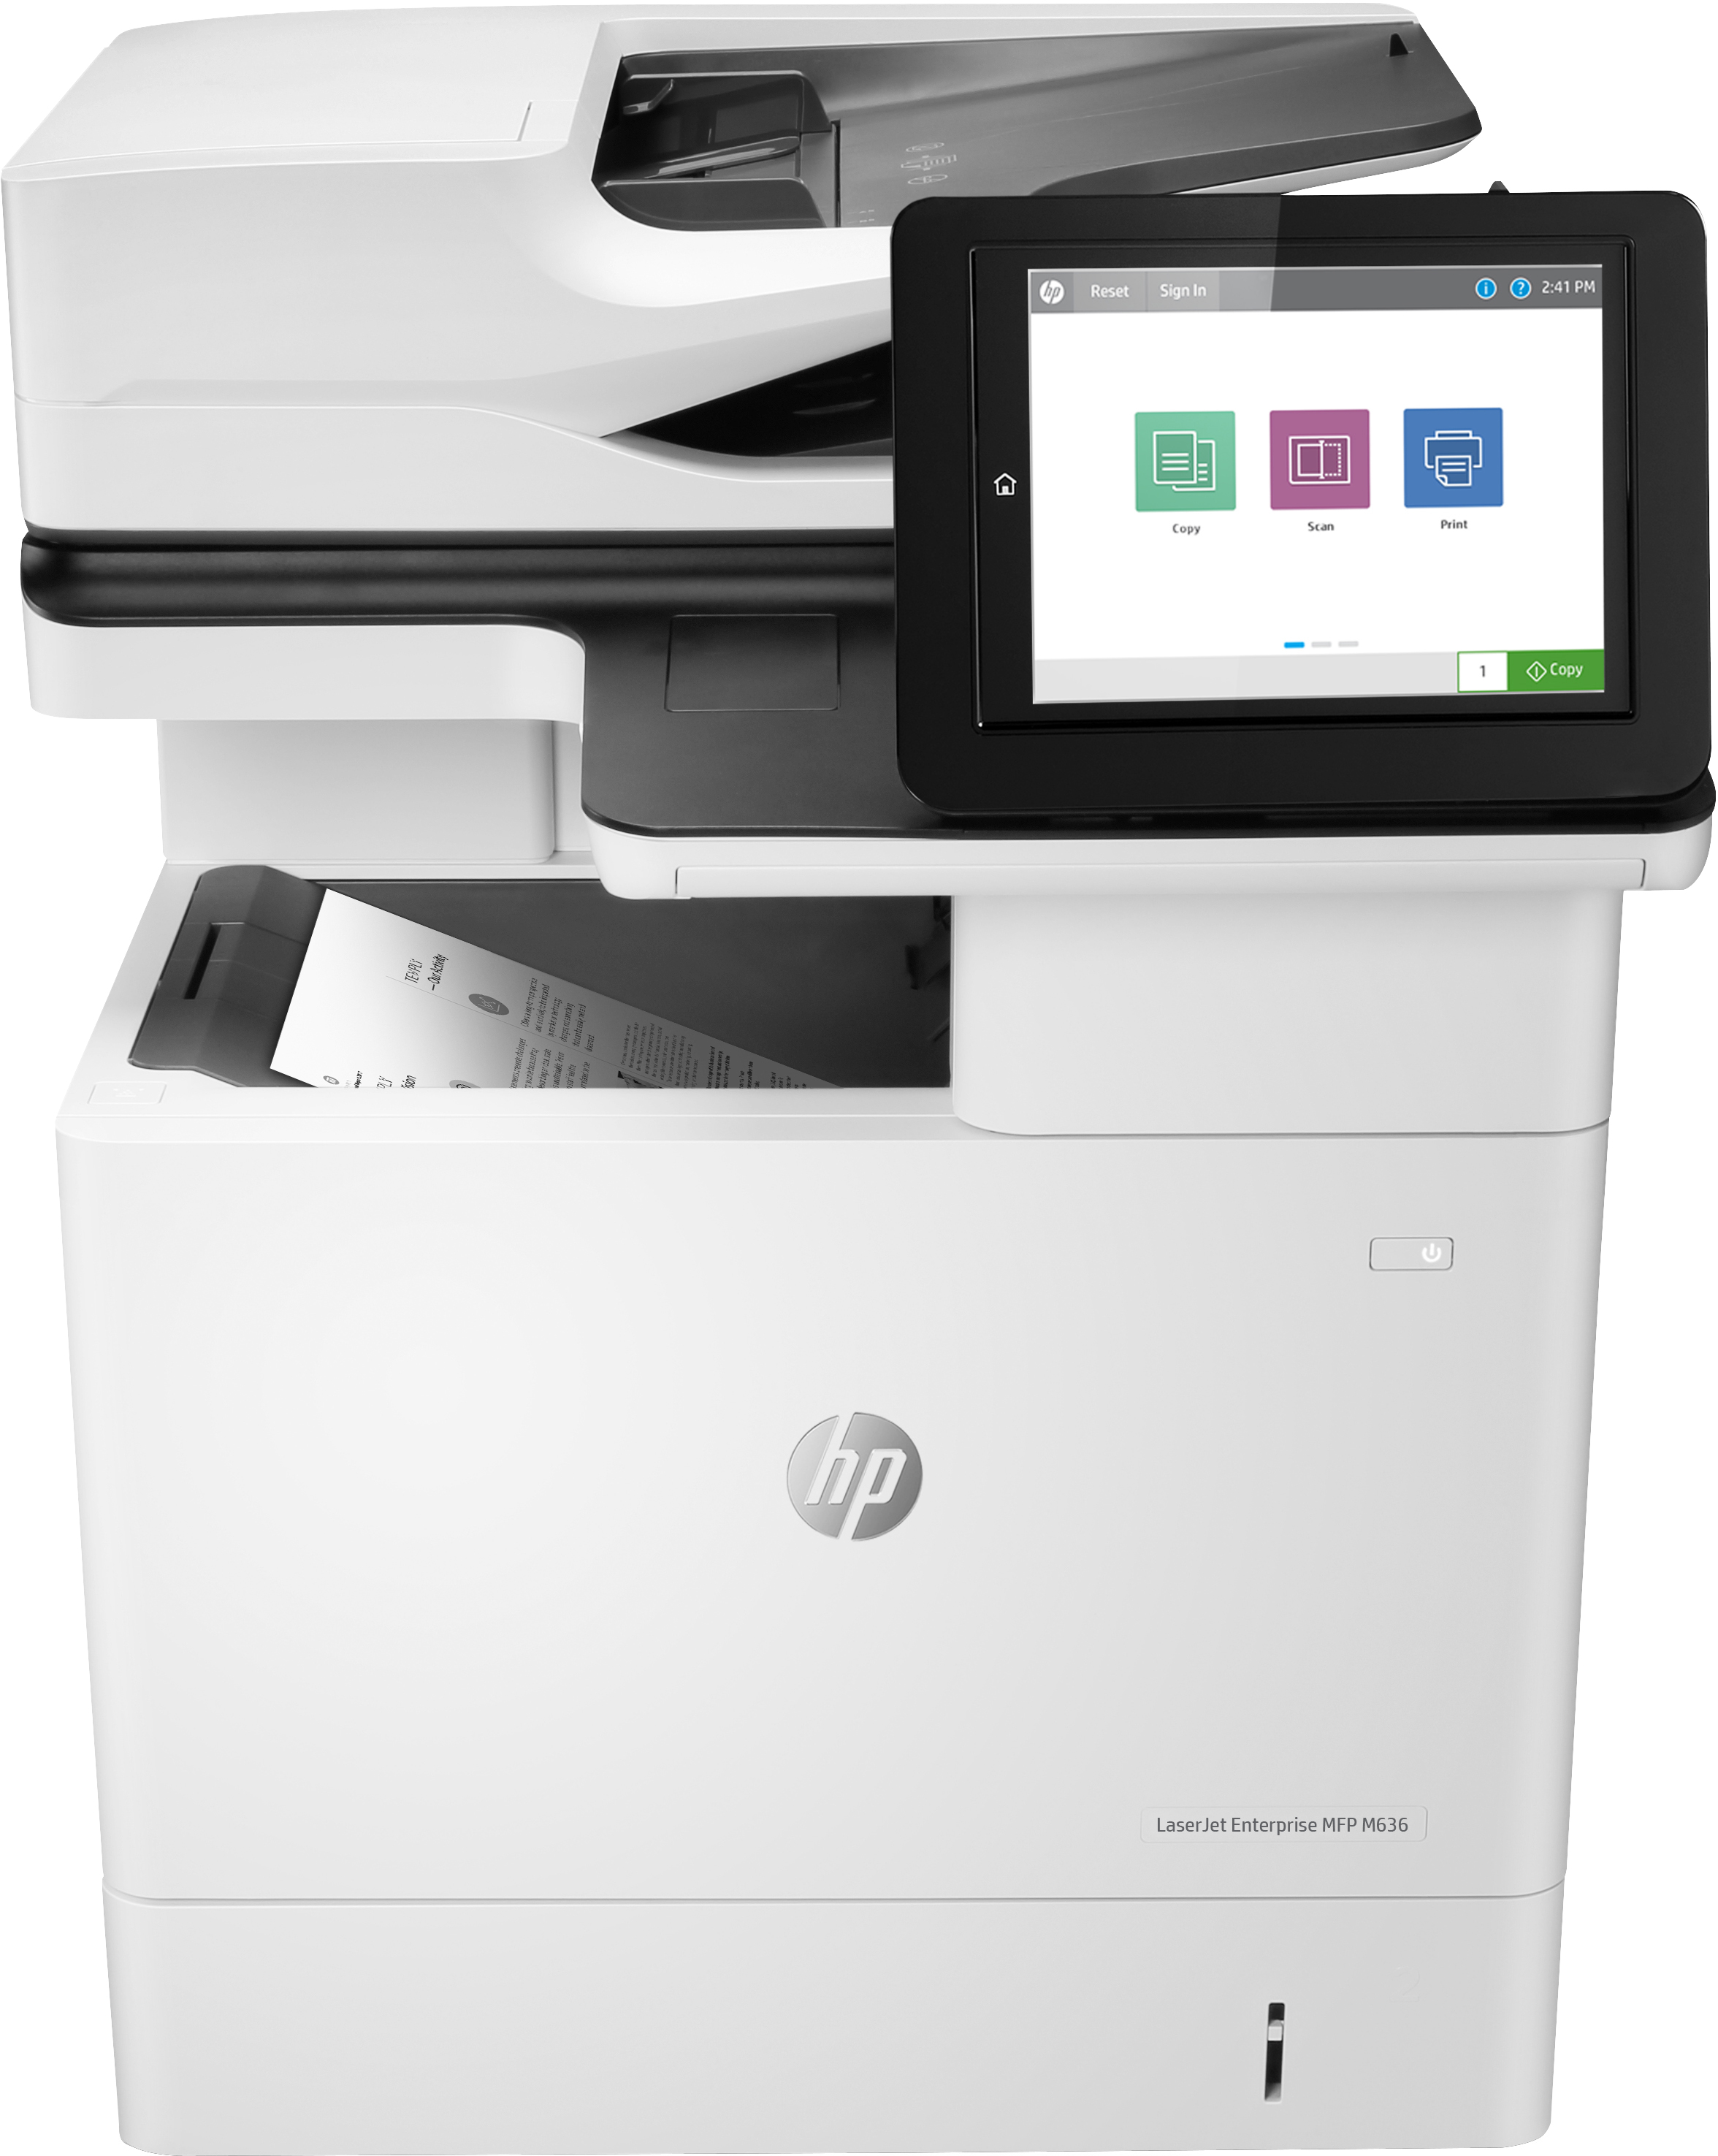 HP LaserJet Enterprise MFP M636fh, Skriv ut, kopiera, skanna, fax, Skanna till e-post; Dubbelsidig utskrift; ADF för 150 ark; Hög säkerhet